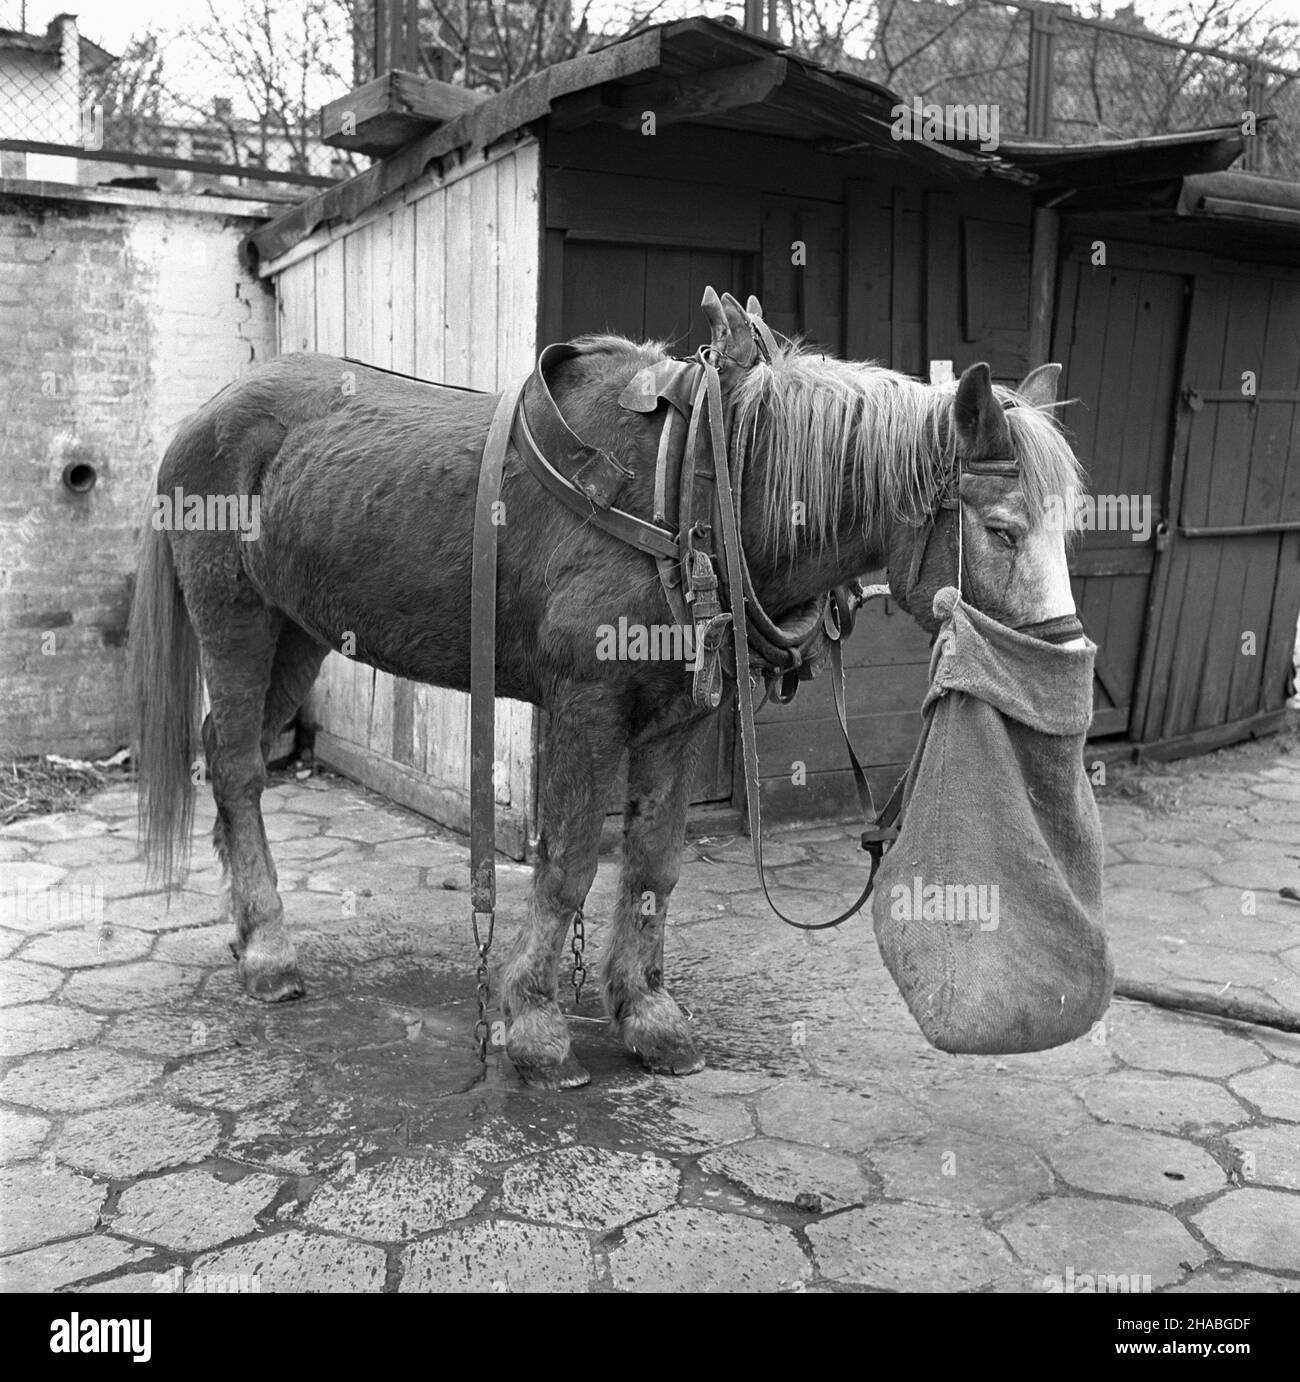 Warszawa, 1969-10-01. Konie na targu ¿ywnoœci w Warszawie. Nz. zmêczony, wynêdznia³y koñ. mb  PAP/Boles³aw Miedza    Dok³adny dzieñ wydarzenia nieustalony.      Warsaw, Oct. 1, 1969. Horses at a food market in Warsaw. Pictured: a tired, haggard horse.  mb  PAP/Boleslaw Miedza Stock Photo